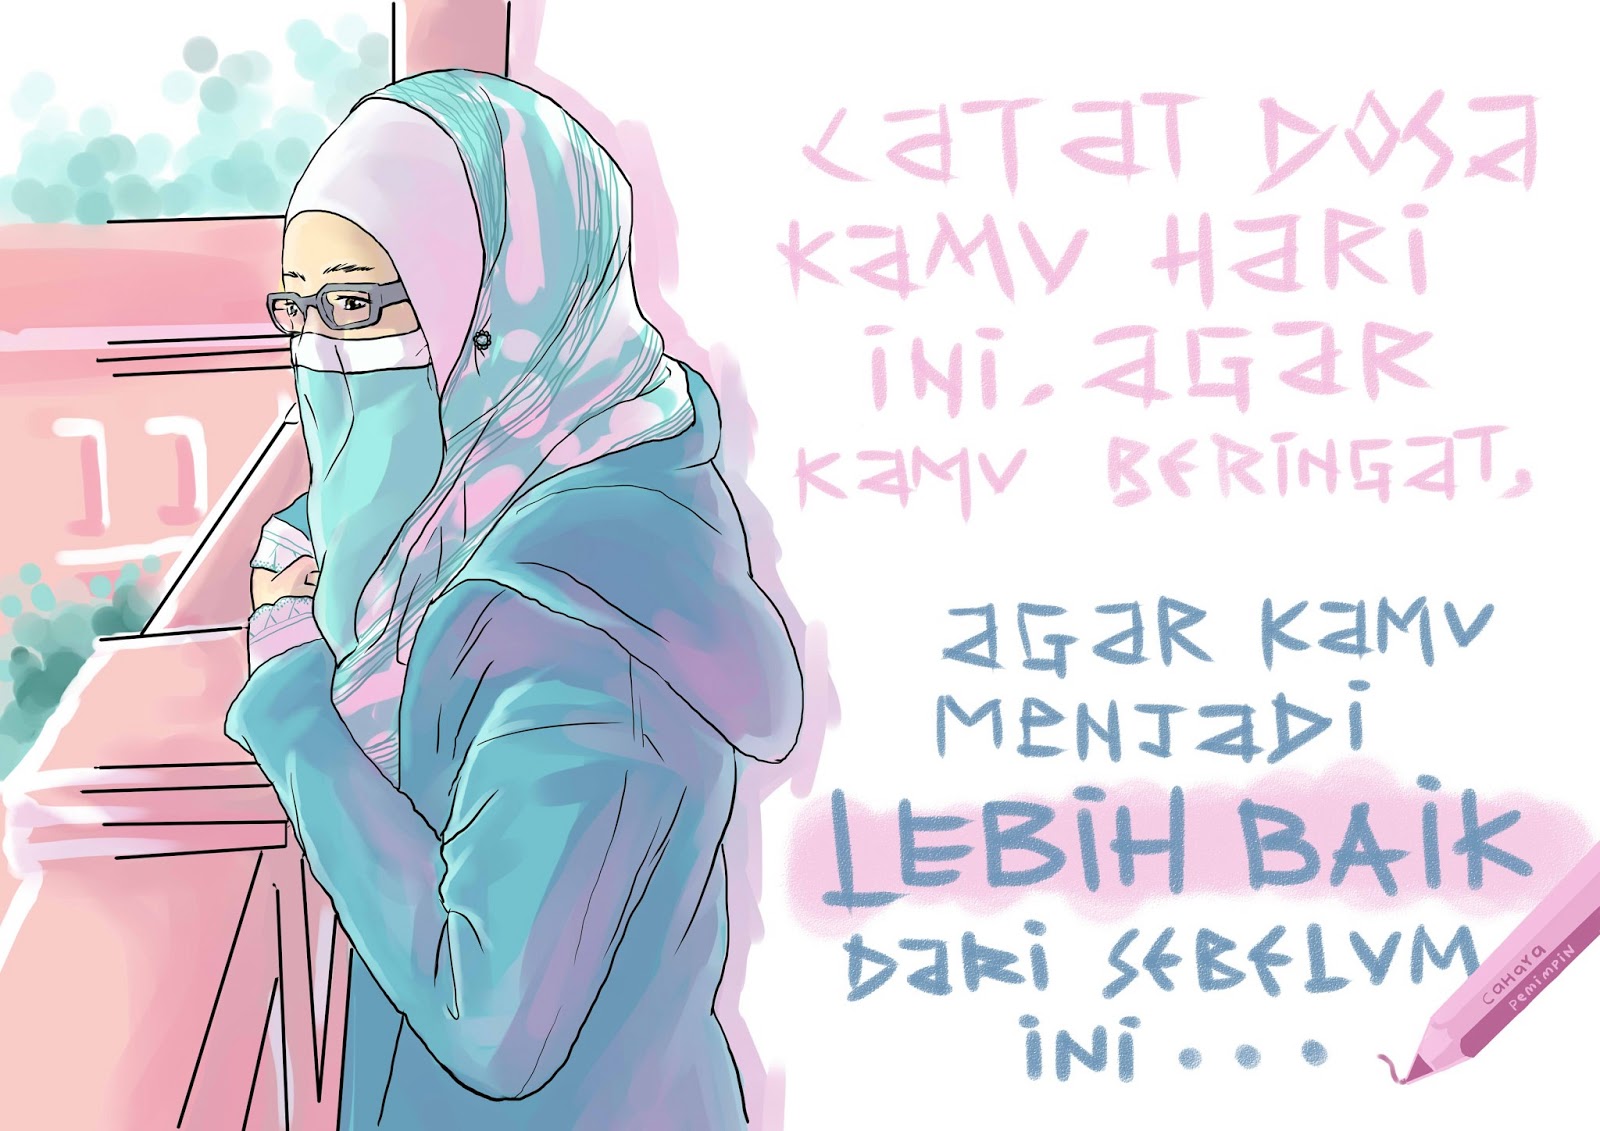 Komik Dakwah Cinta Pada Wallpaper Muslimah Drawing Catat Dosamu